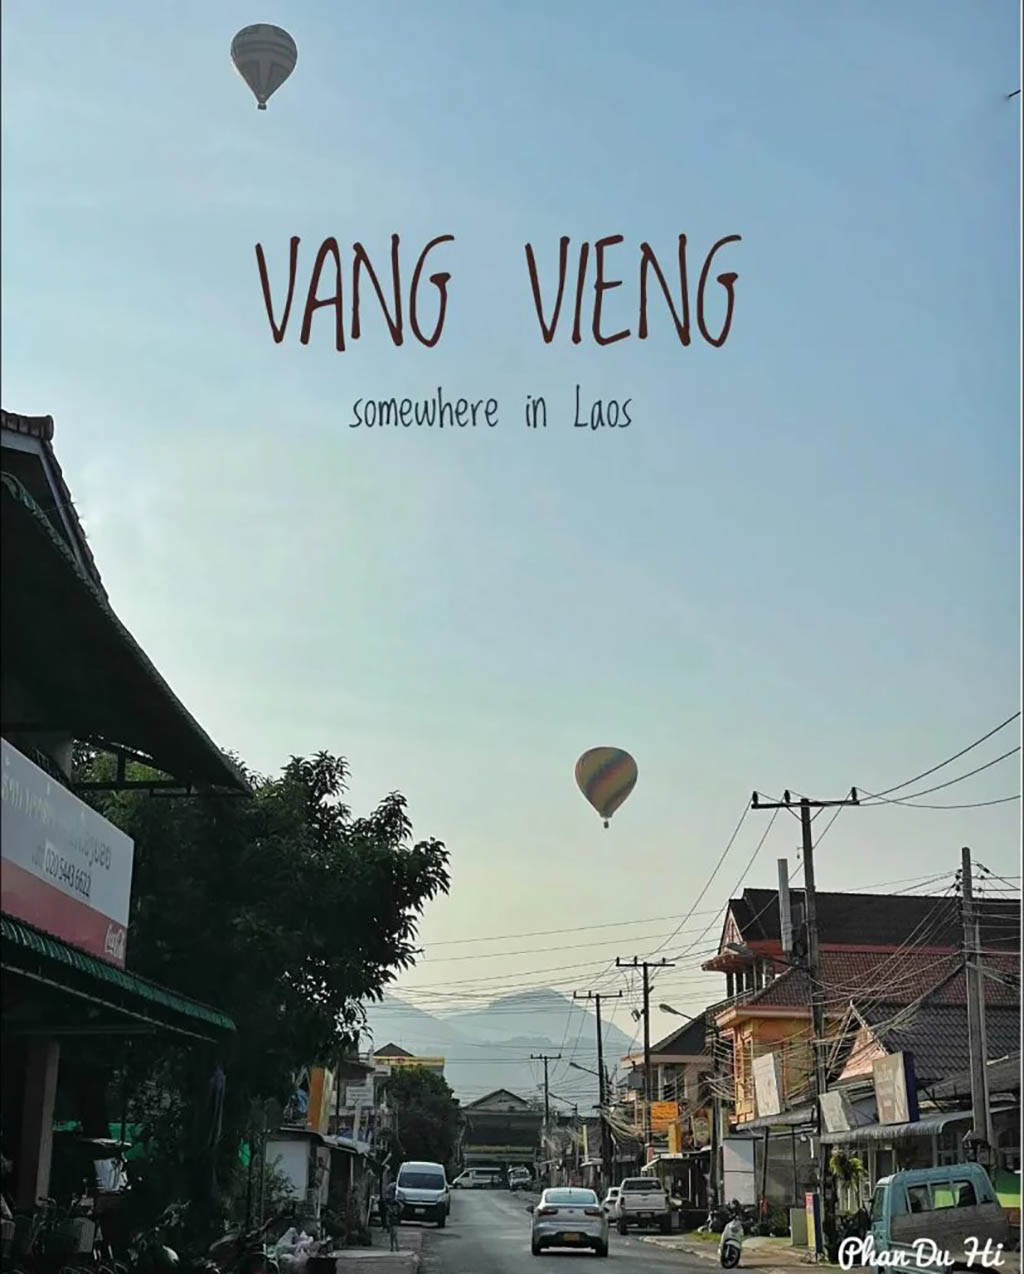 Du Lịch Văng Viêng (Lào): Di Chuyển, Tham Quan & Lưu Trú